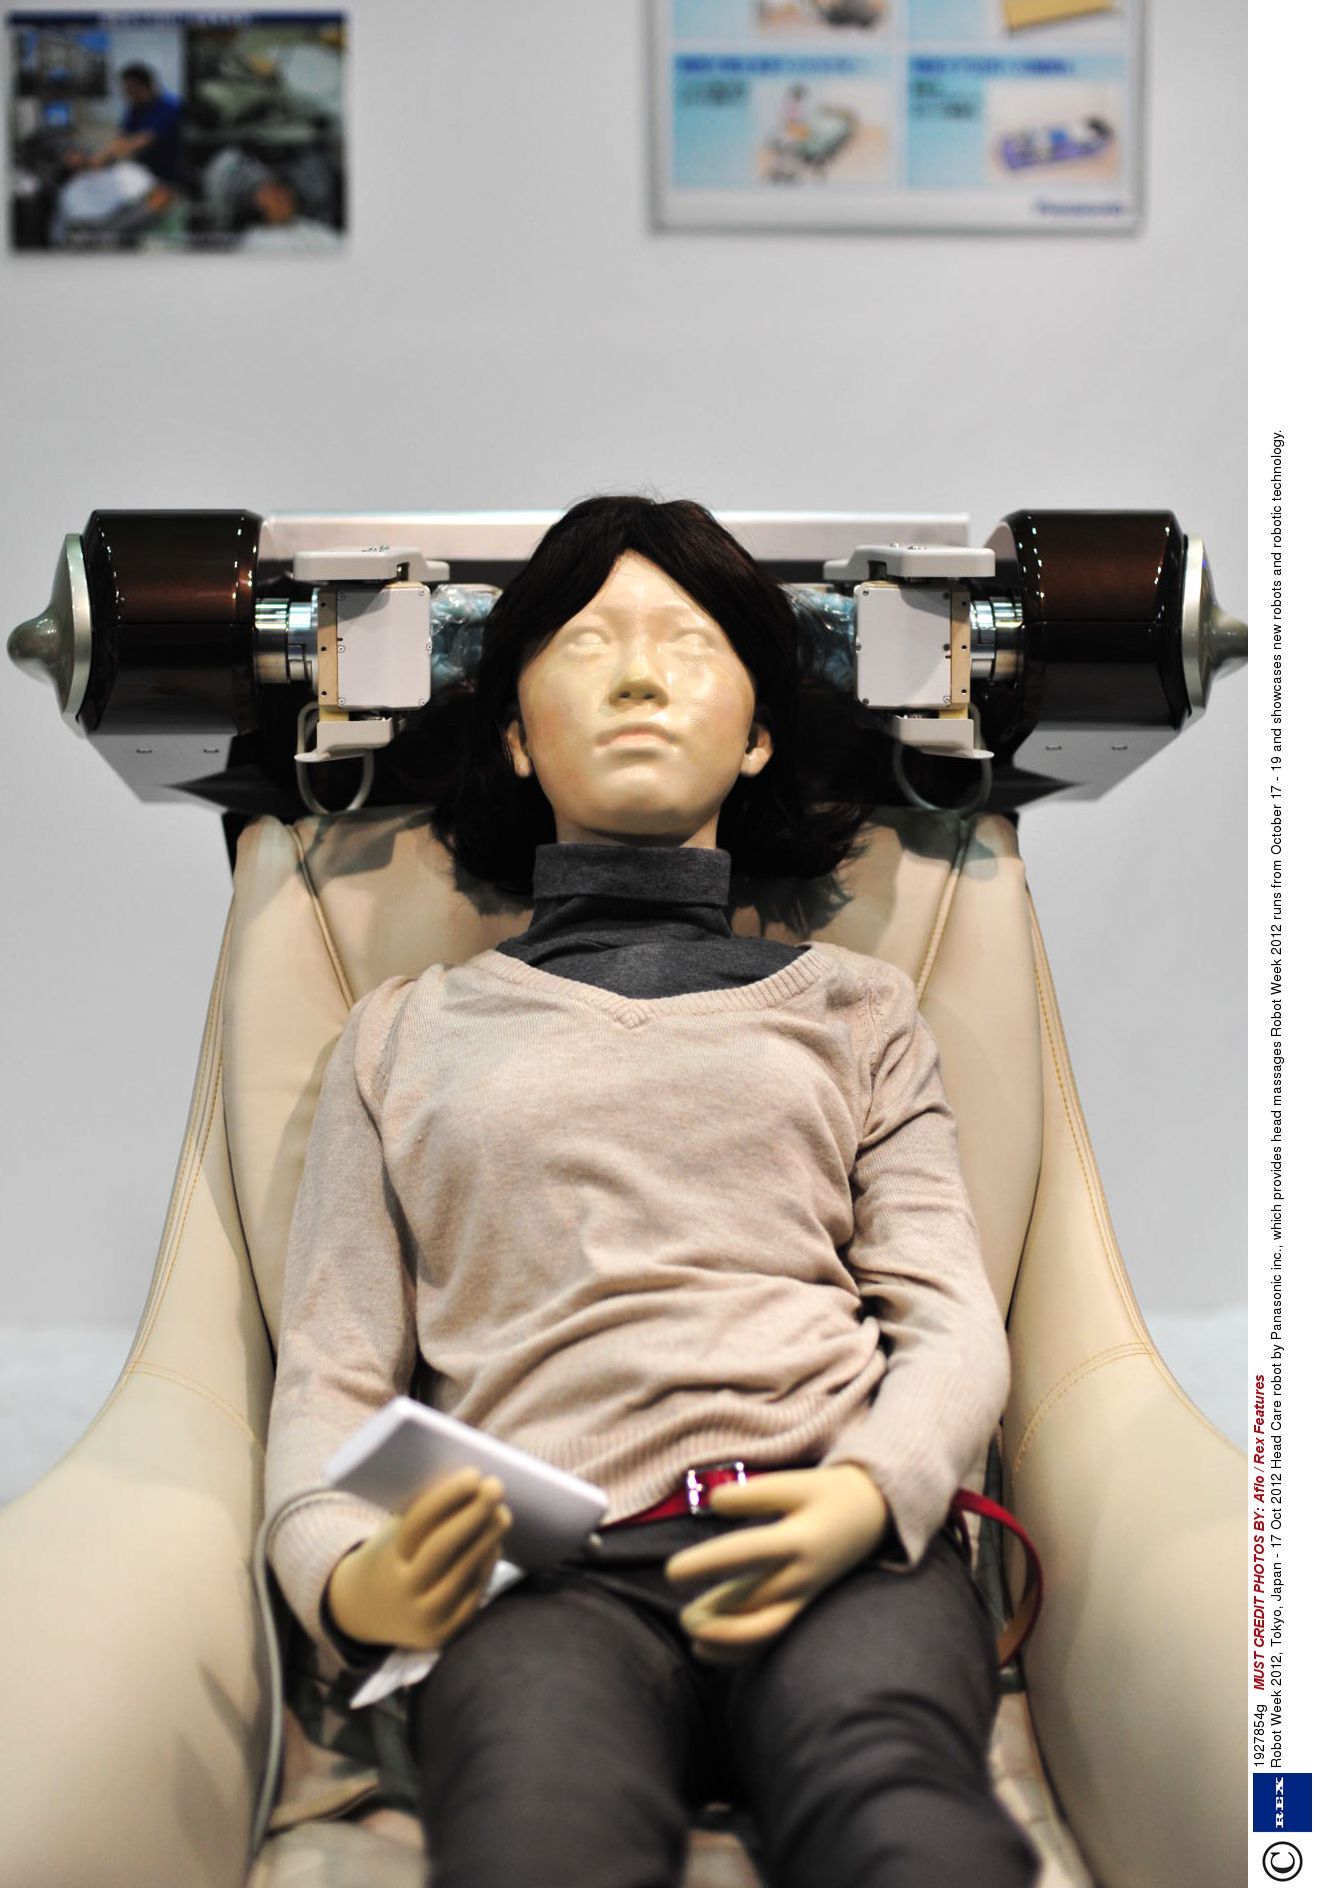 Massage Robotics